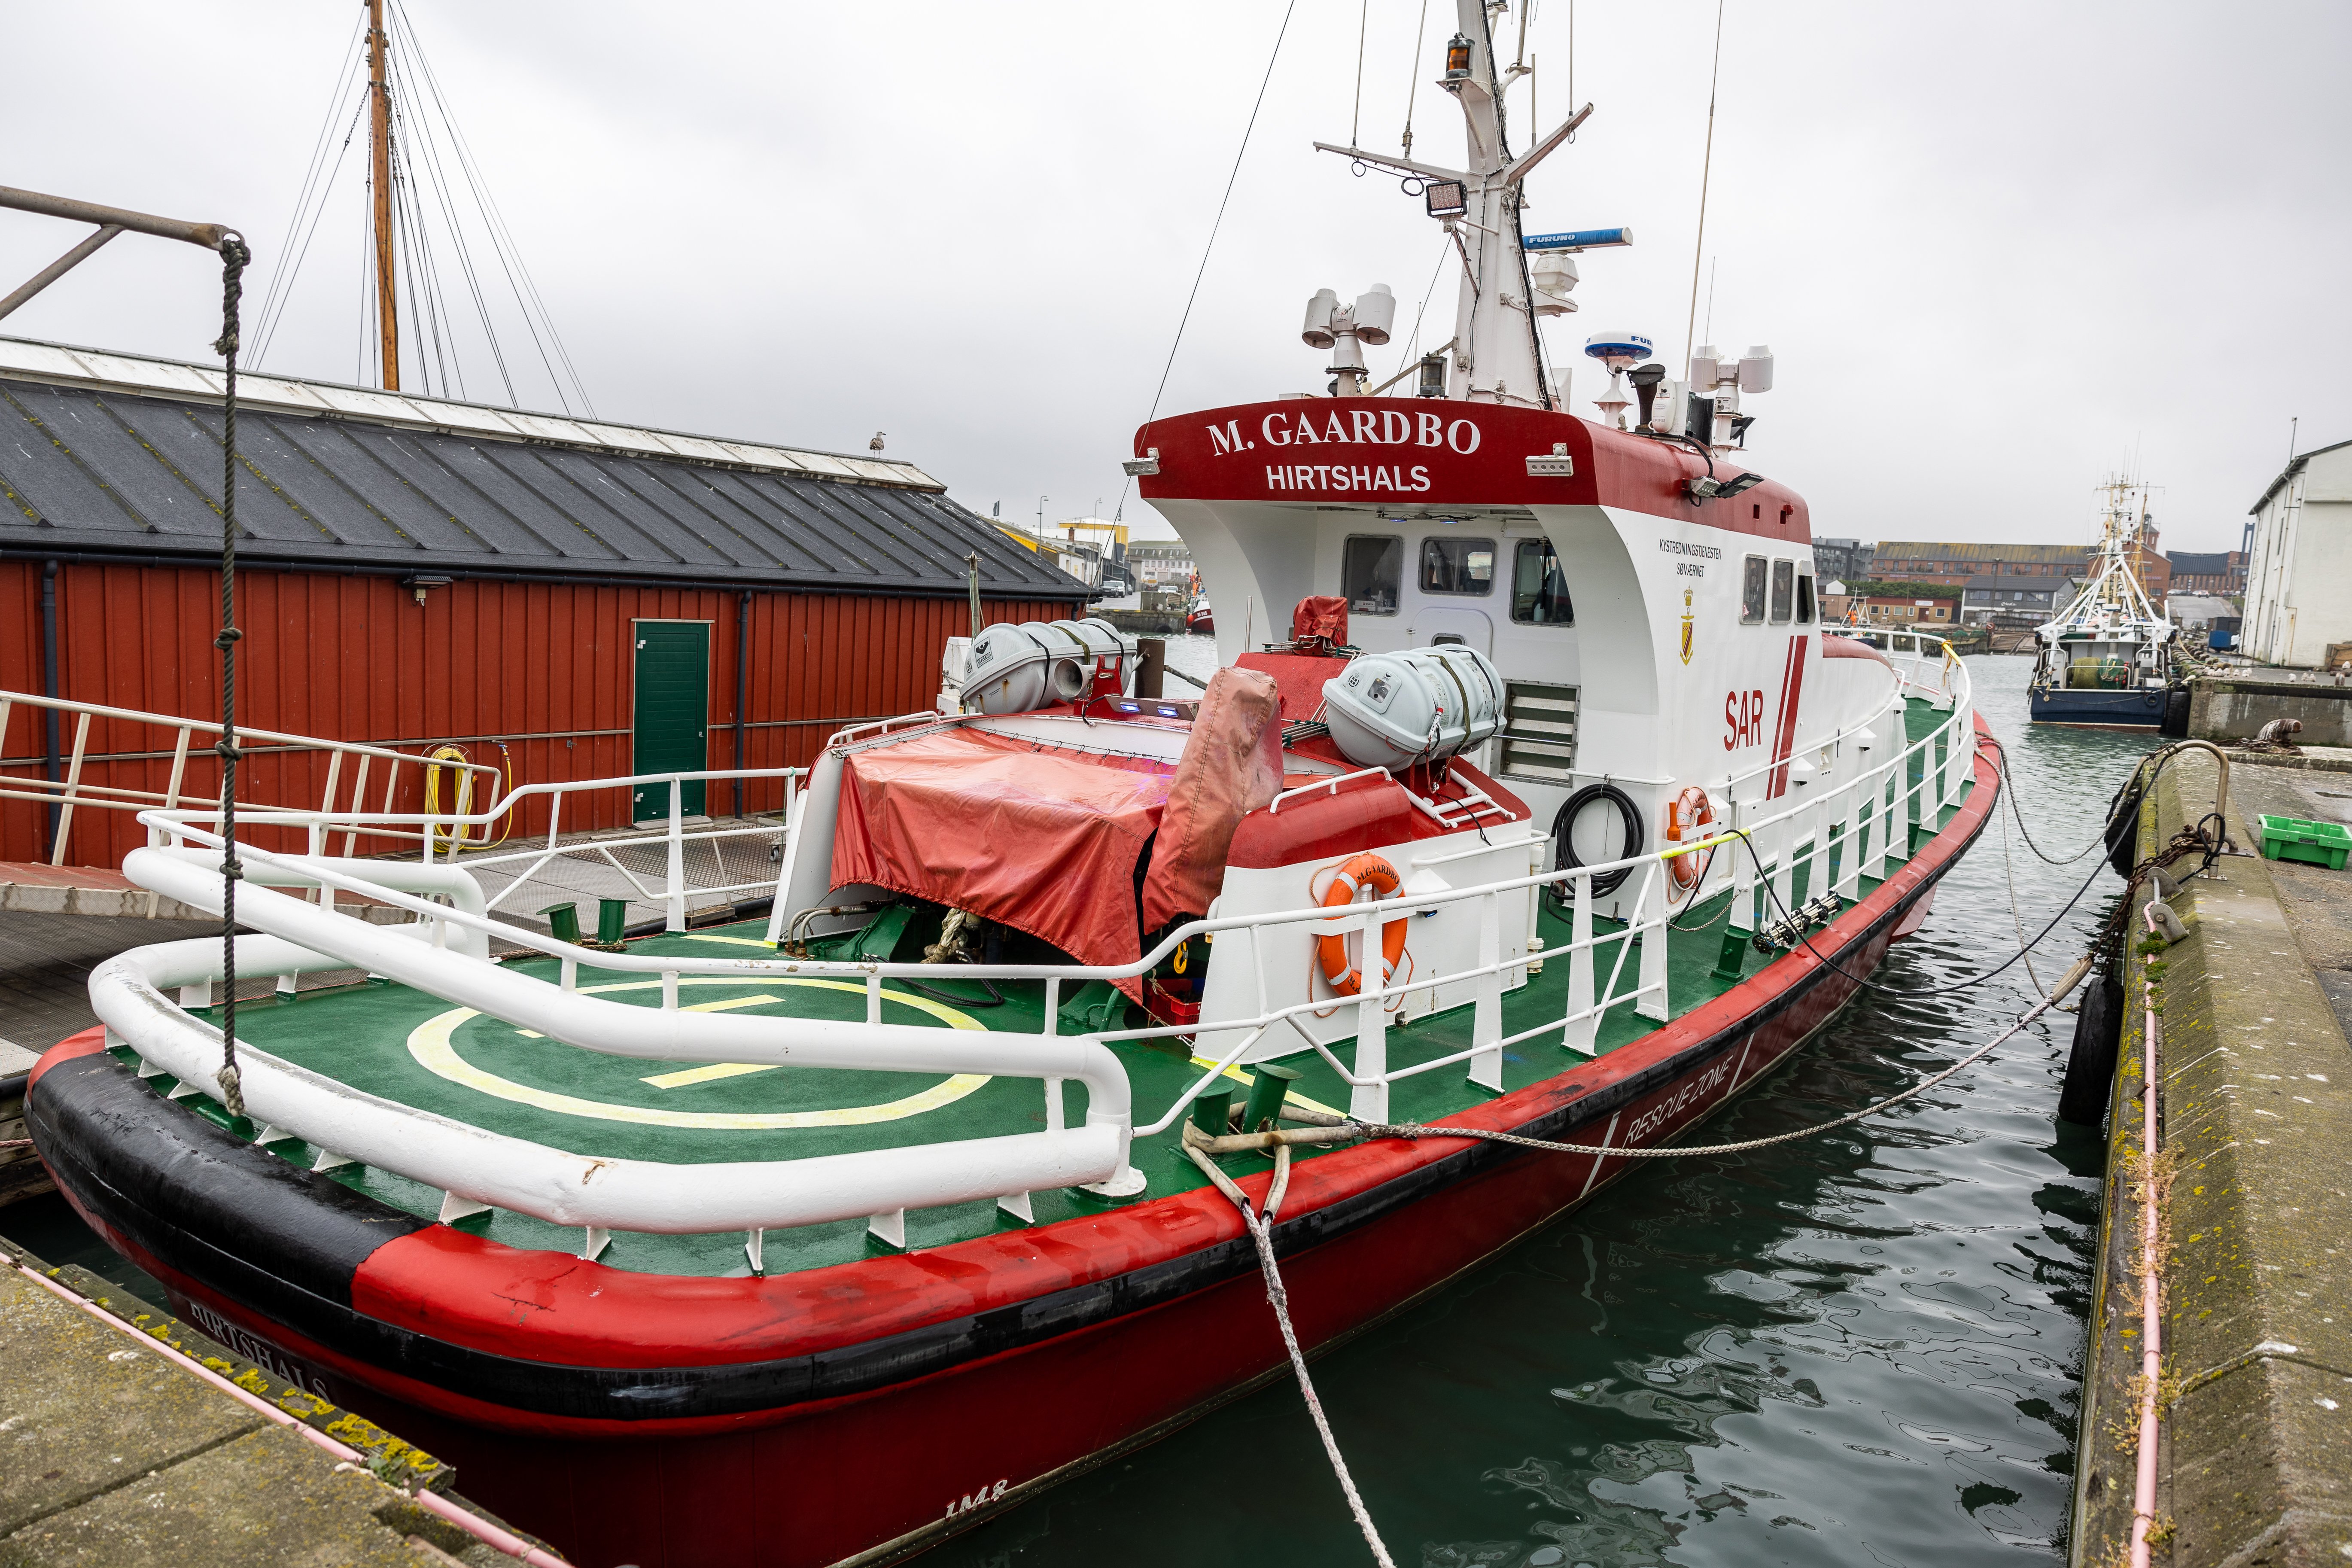 Havets ambulancer er ude af drift: - Det her forstyrrer vores nattesøvn